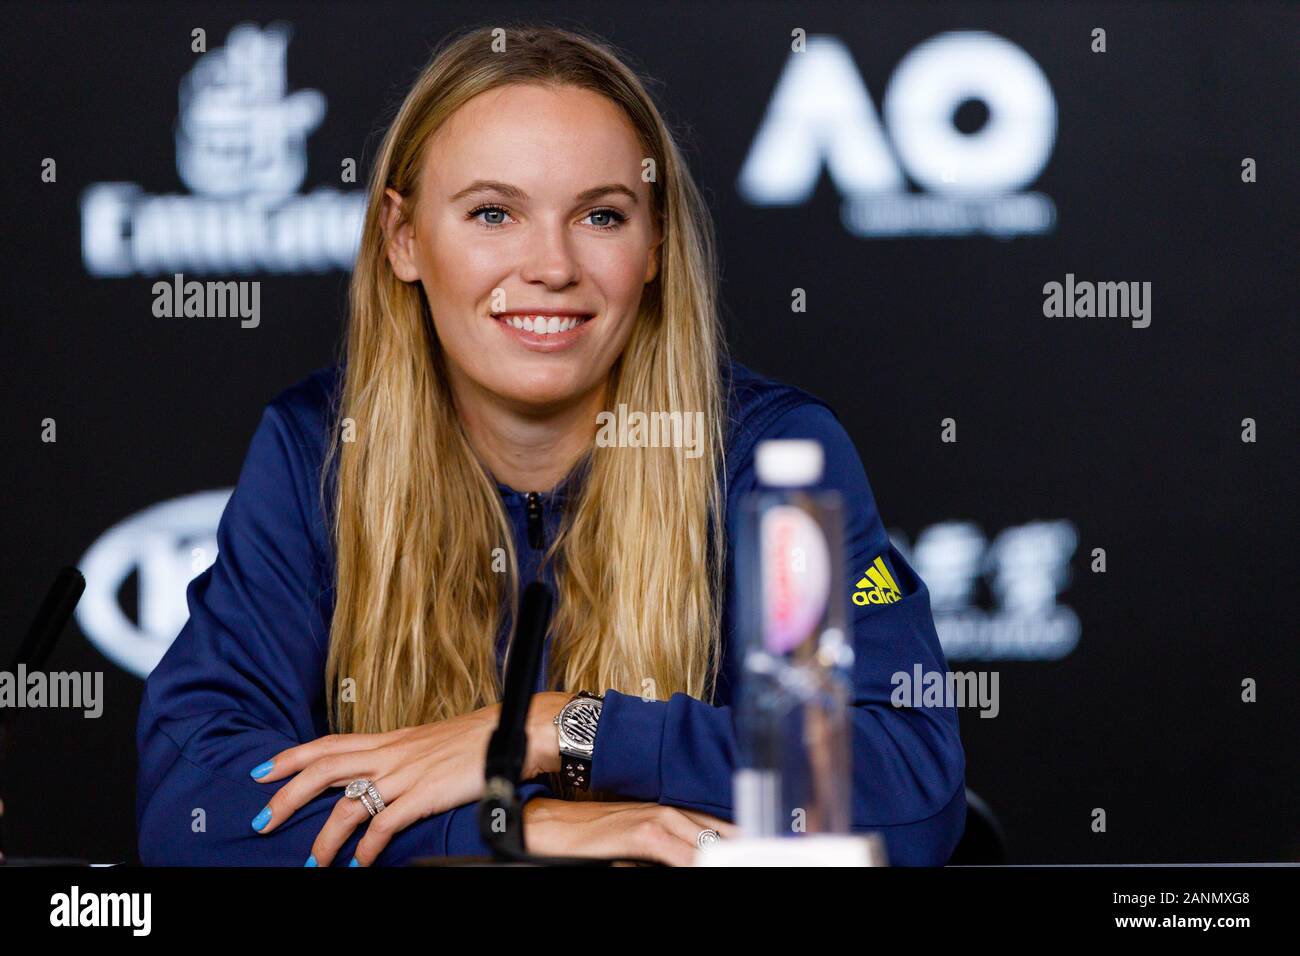 Caroline WOZNIACKI (DEN) während einer Pressekonferenz bei den Australian Open 2020 Stockfoto